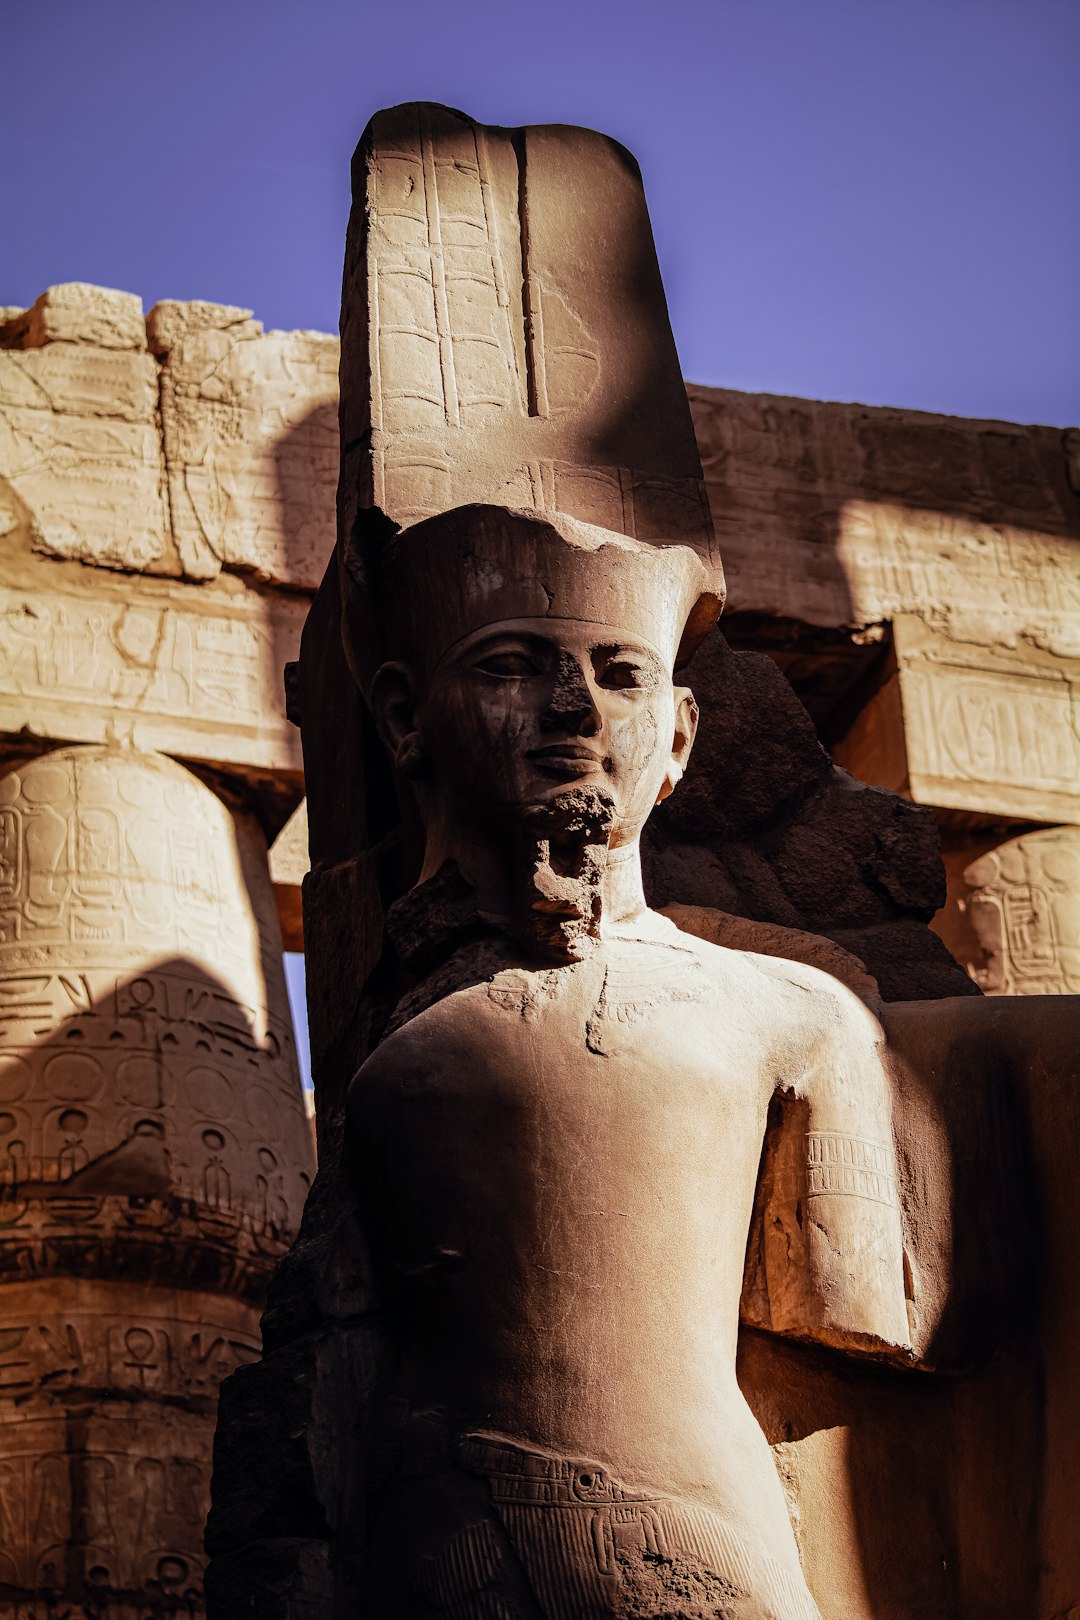 Travel Tips and Stories of Karnak in Egypt